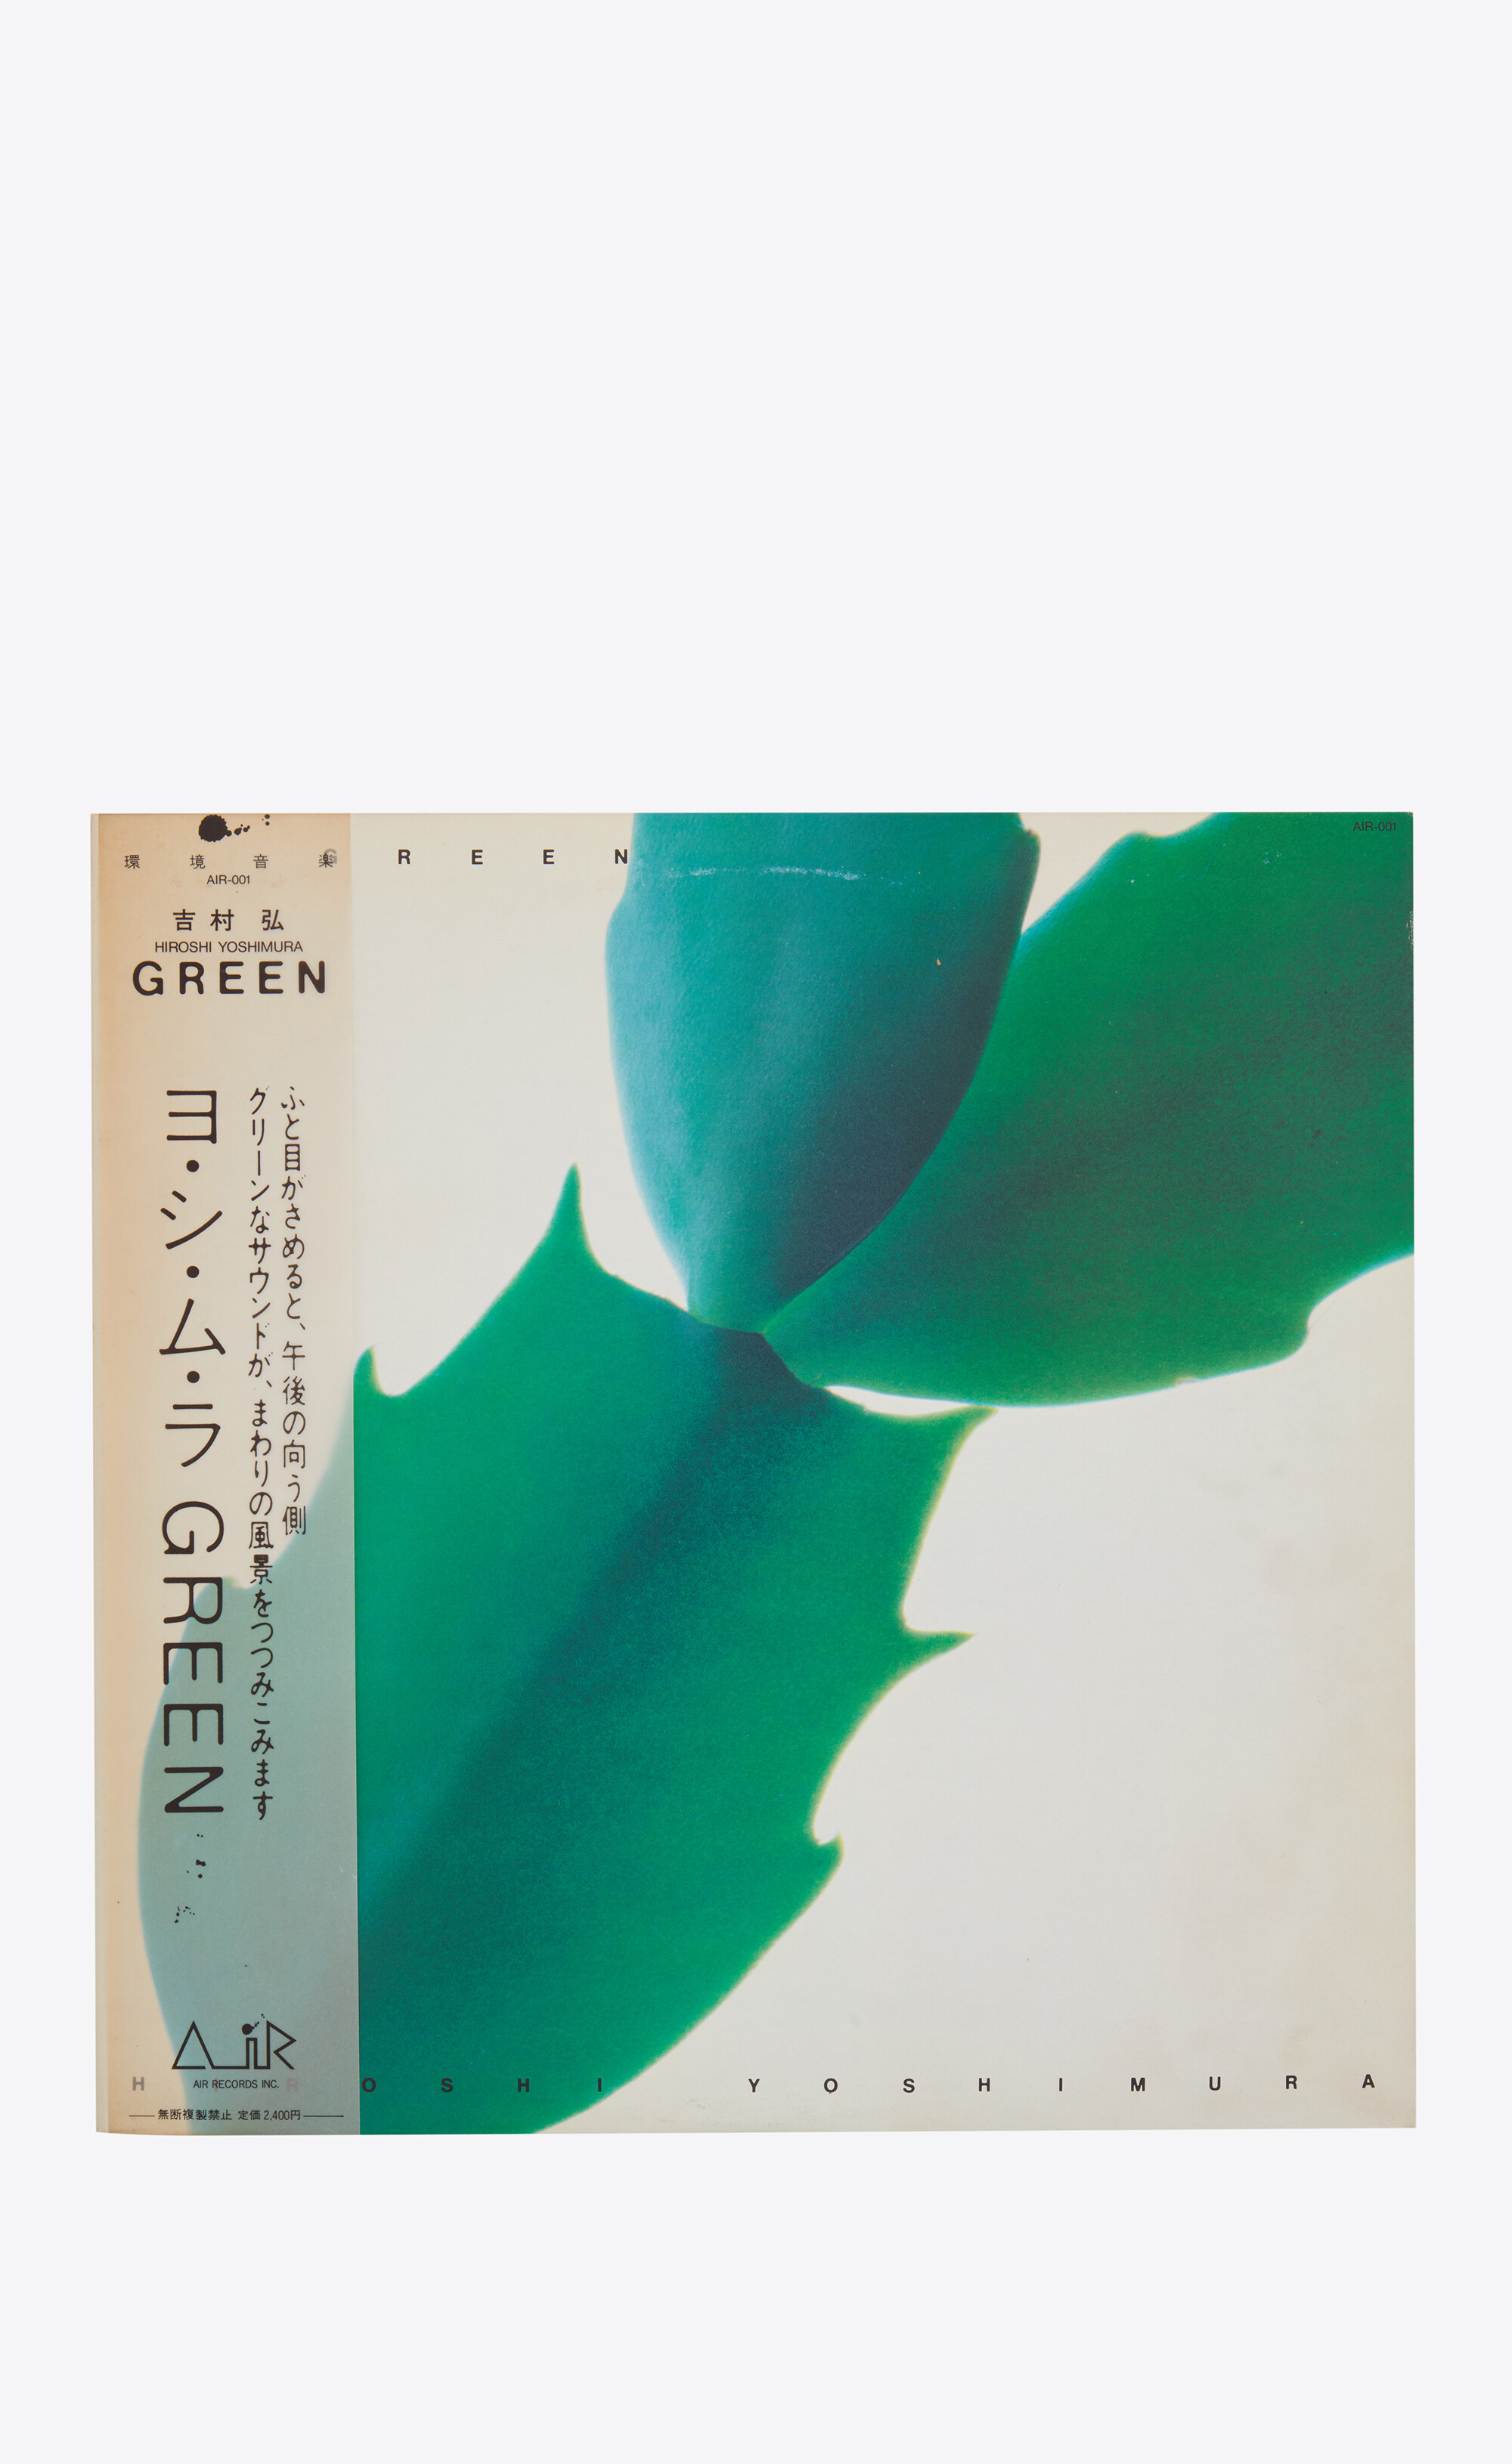 吉村弘 – Green